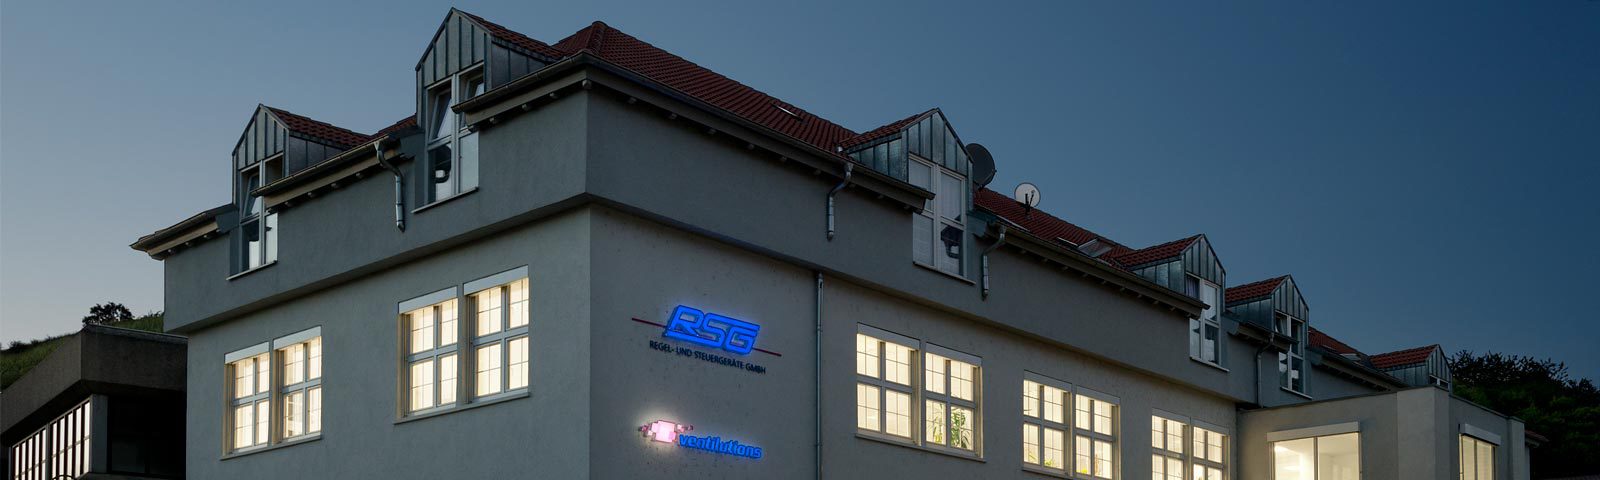 RSG Regel- und Steuergeräte GmbH